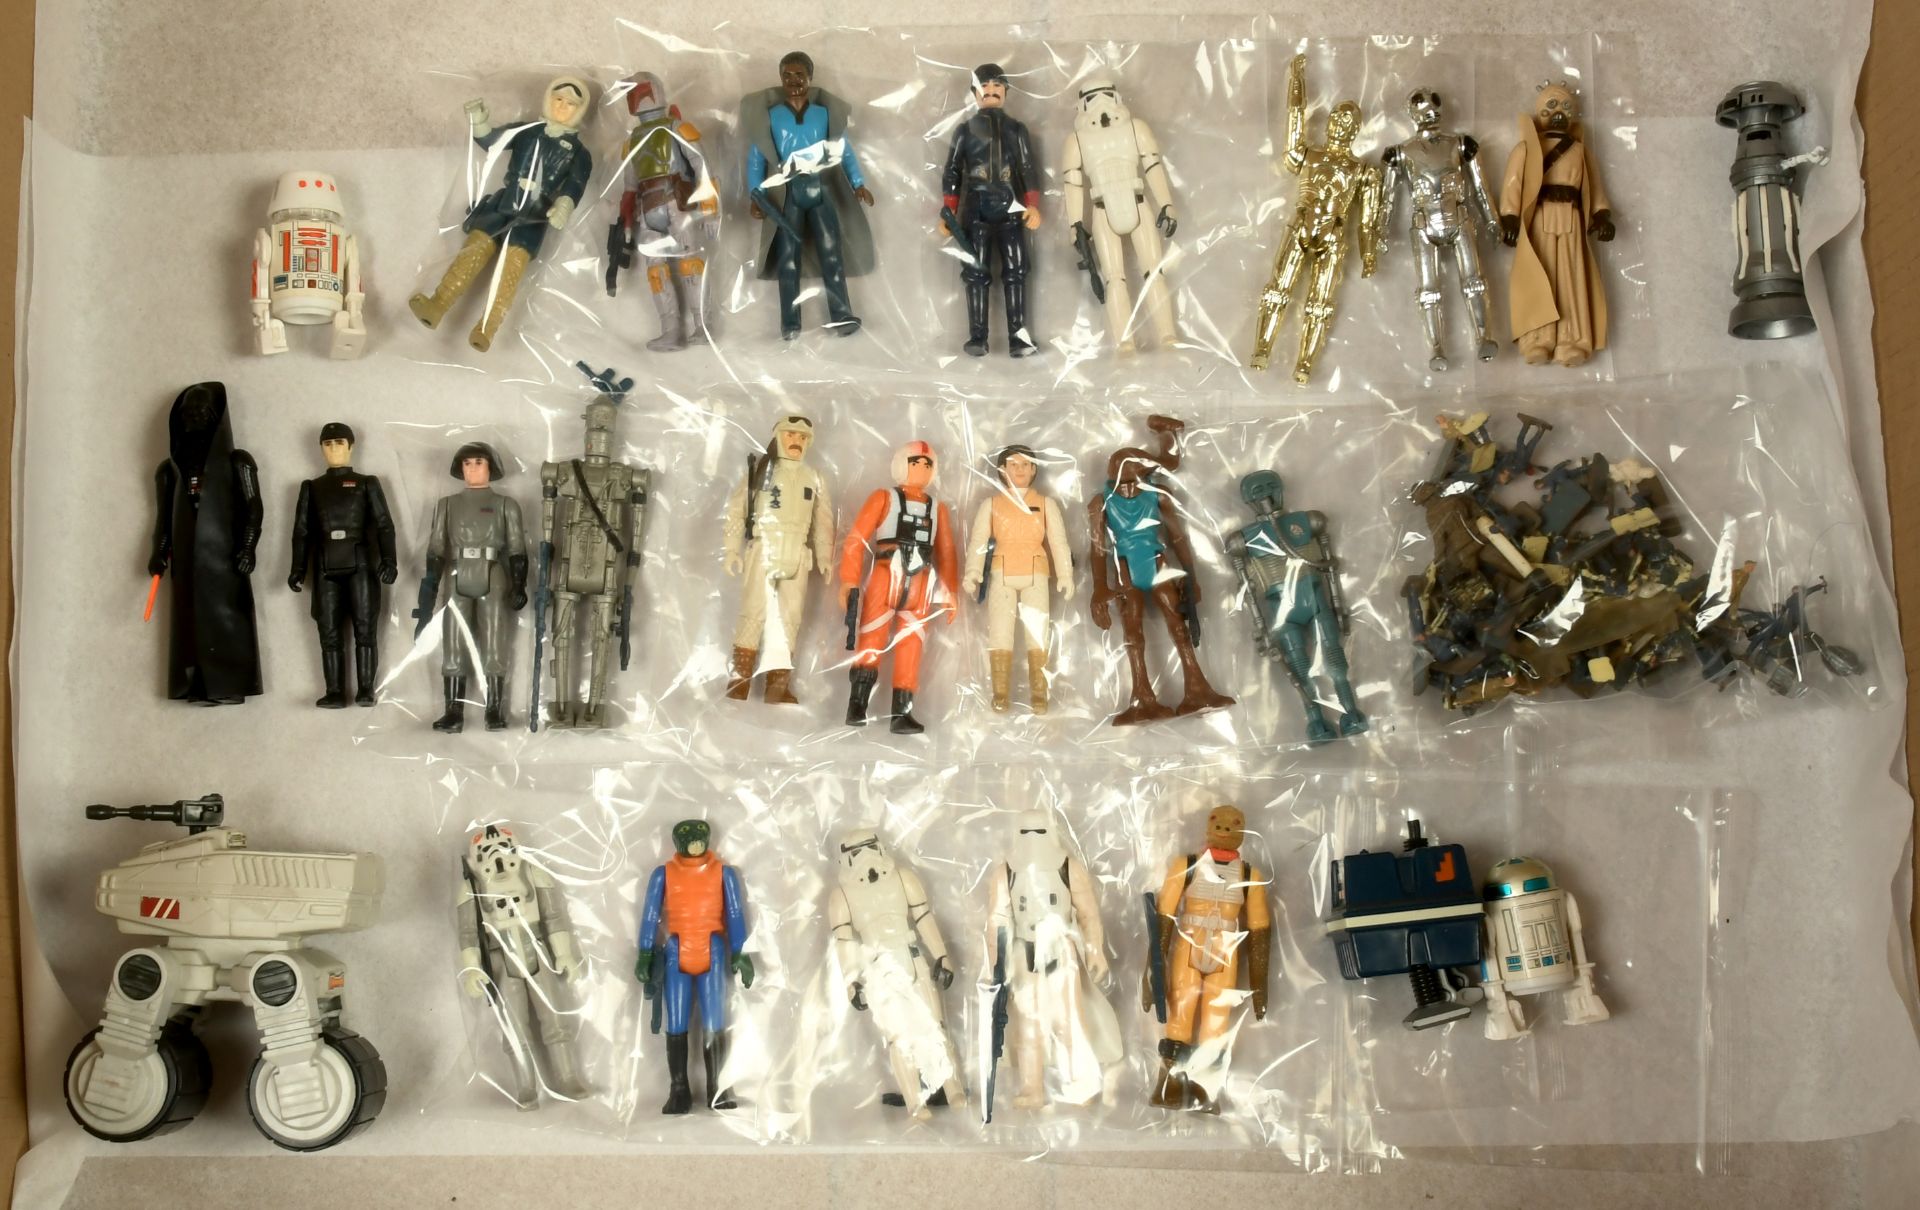 Kenner Star Wars collection of 3 3/4" vintage figures